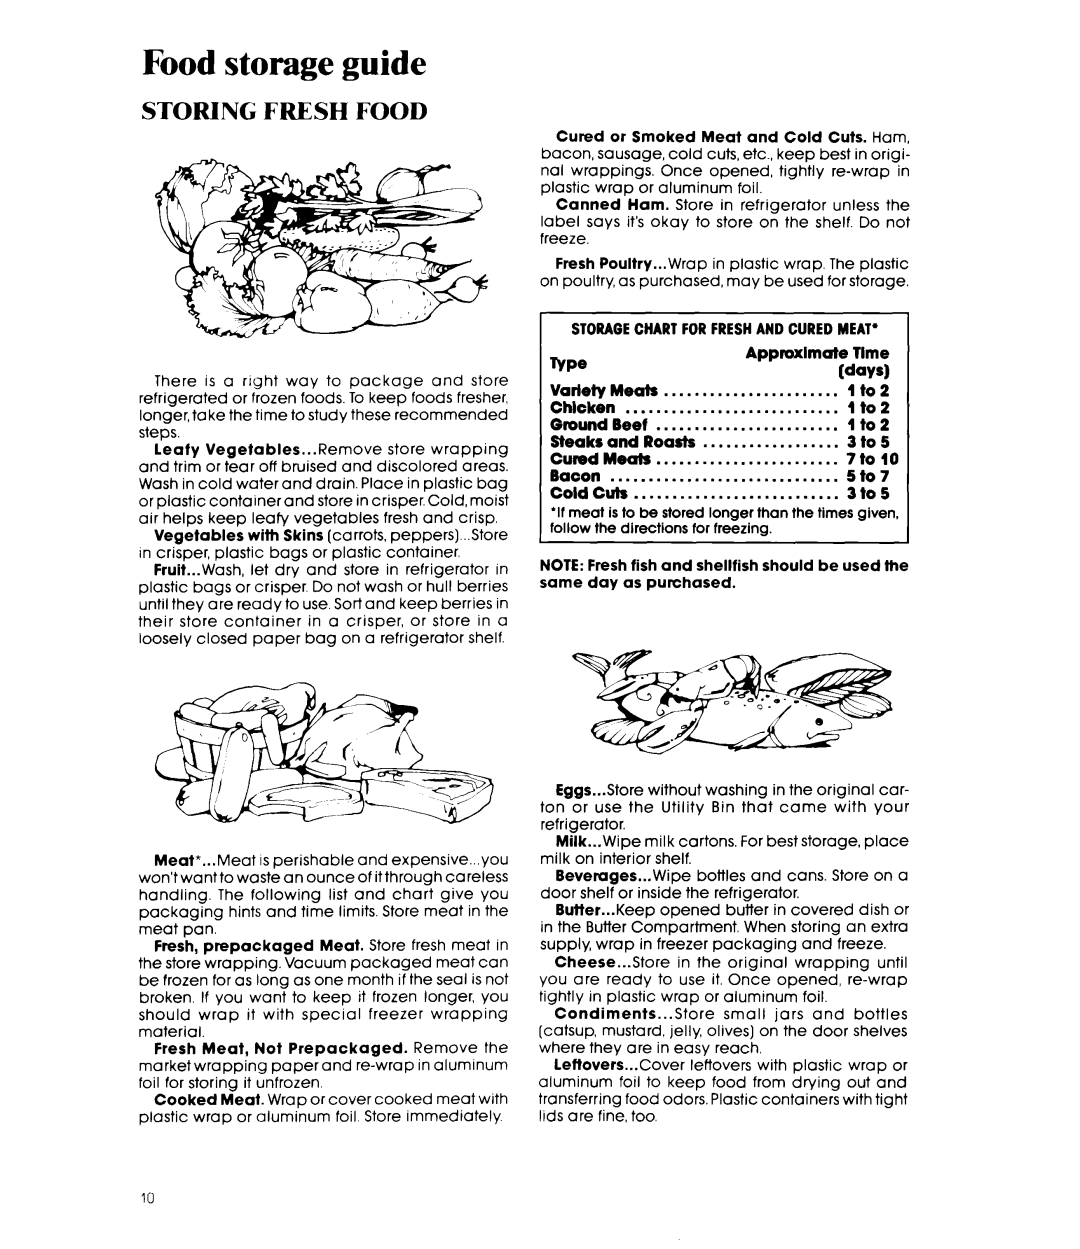 Whirlpool EF19MK manual Food storage guide, Storing Fresh Food 